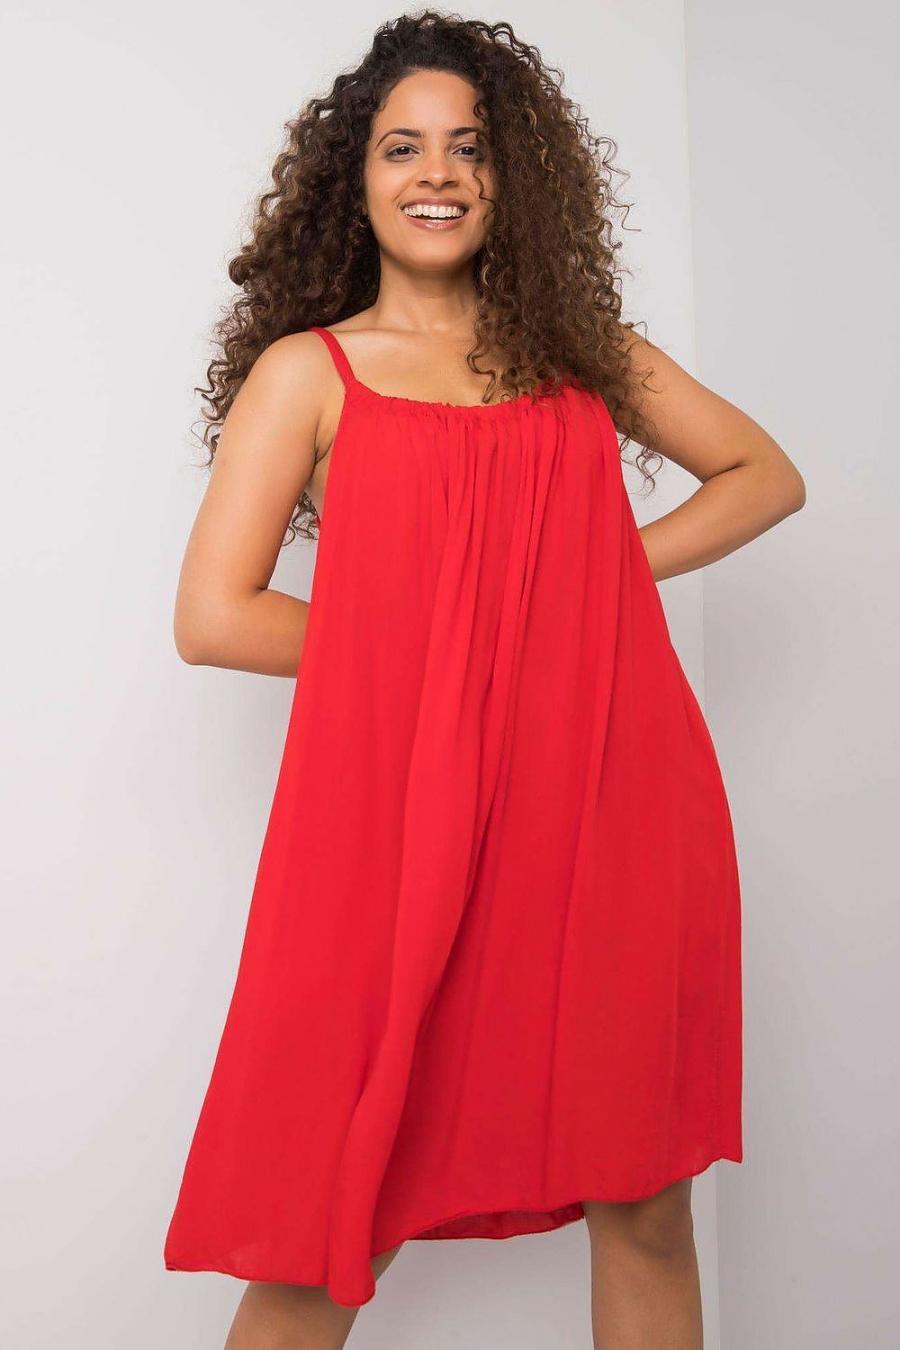 Ostatní značky šaty dámské 165036 - červená - velikost M